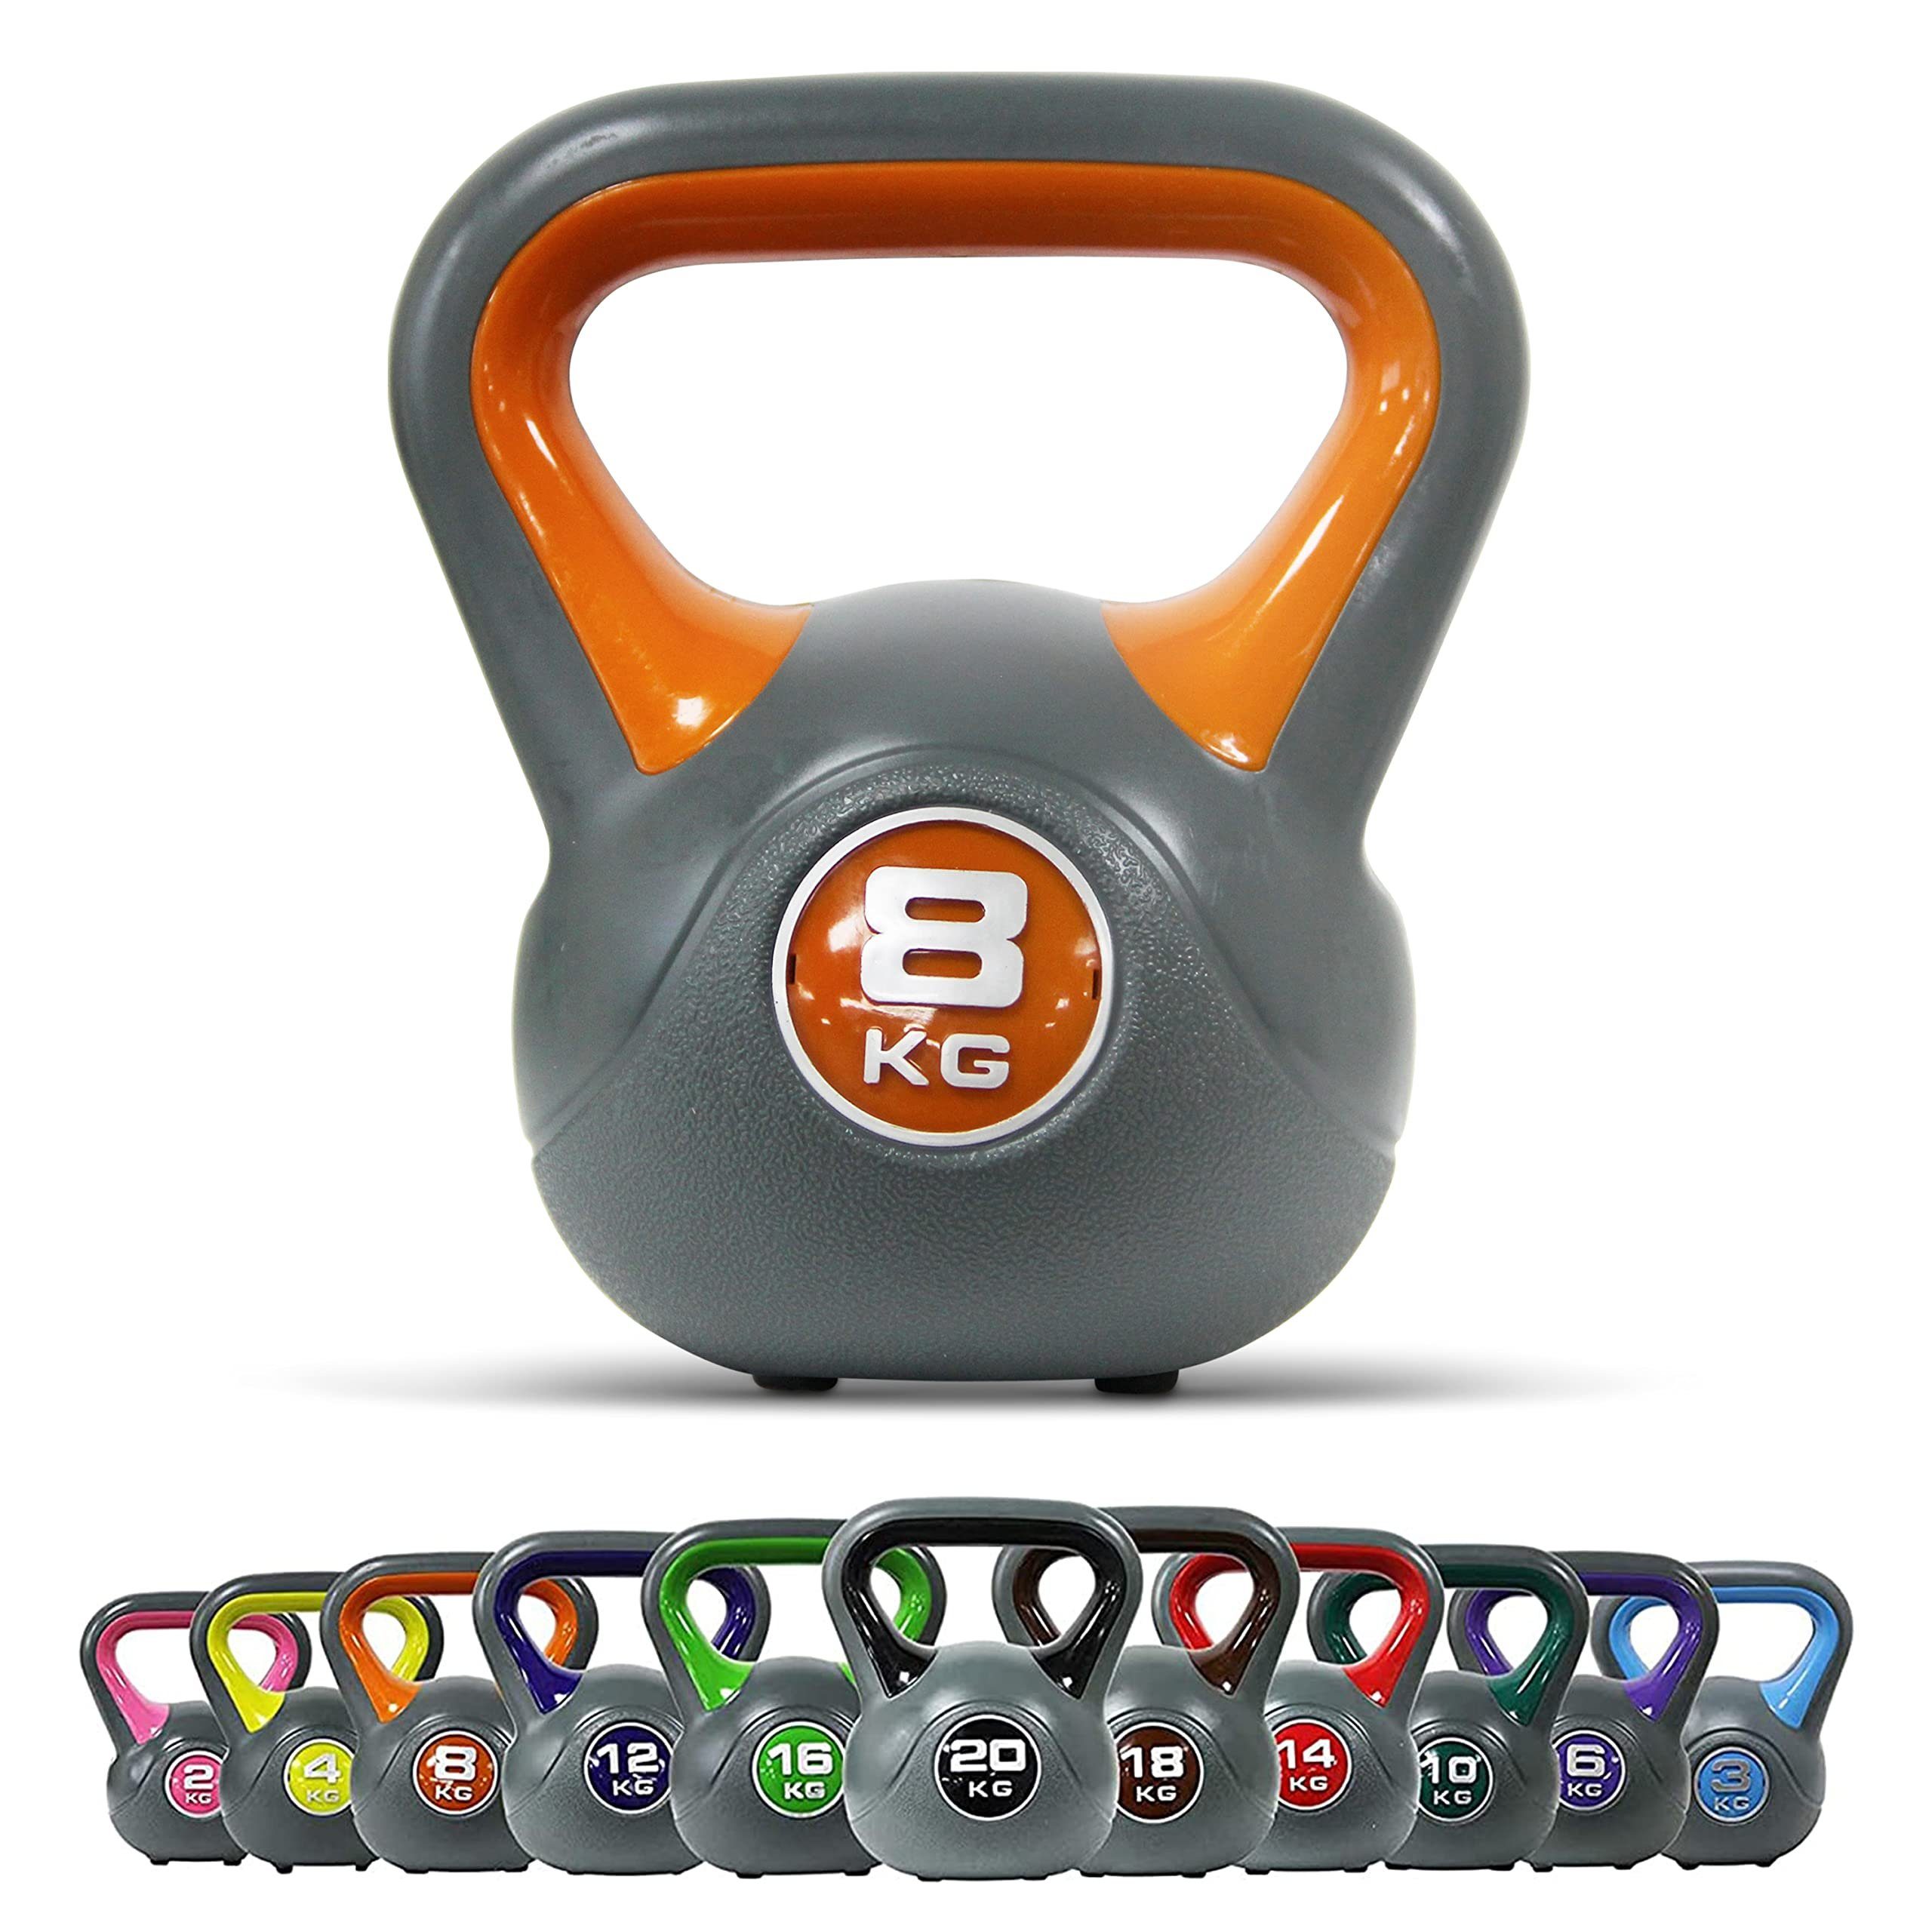 POWRX Kettlebell Kugelhantel 2-20 kg inkl. Workout in versch. Farben und Gewichten, 8 Kg - Orange Kunststoff